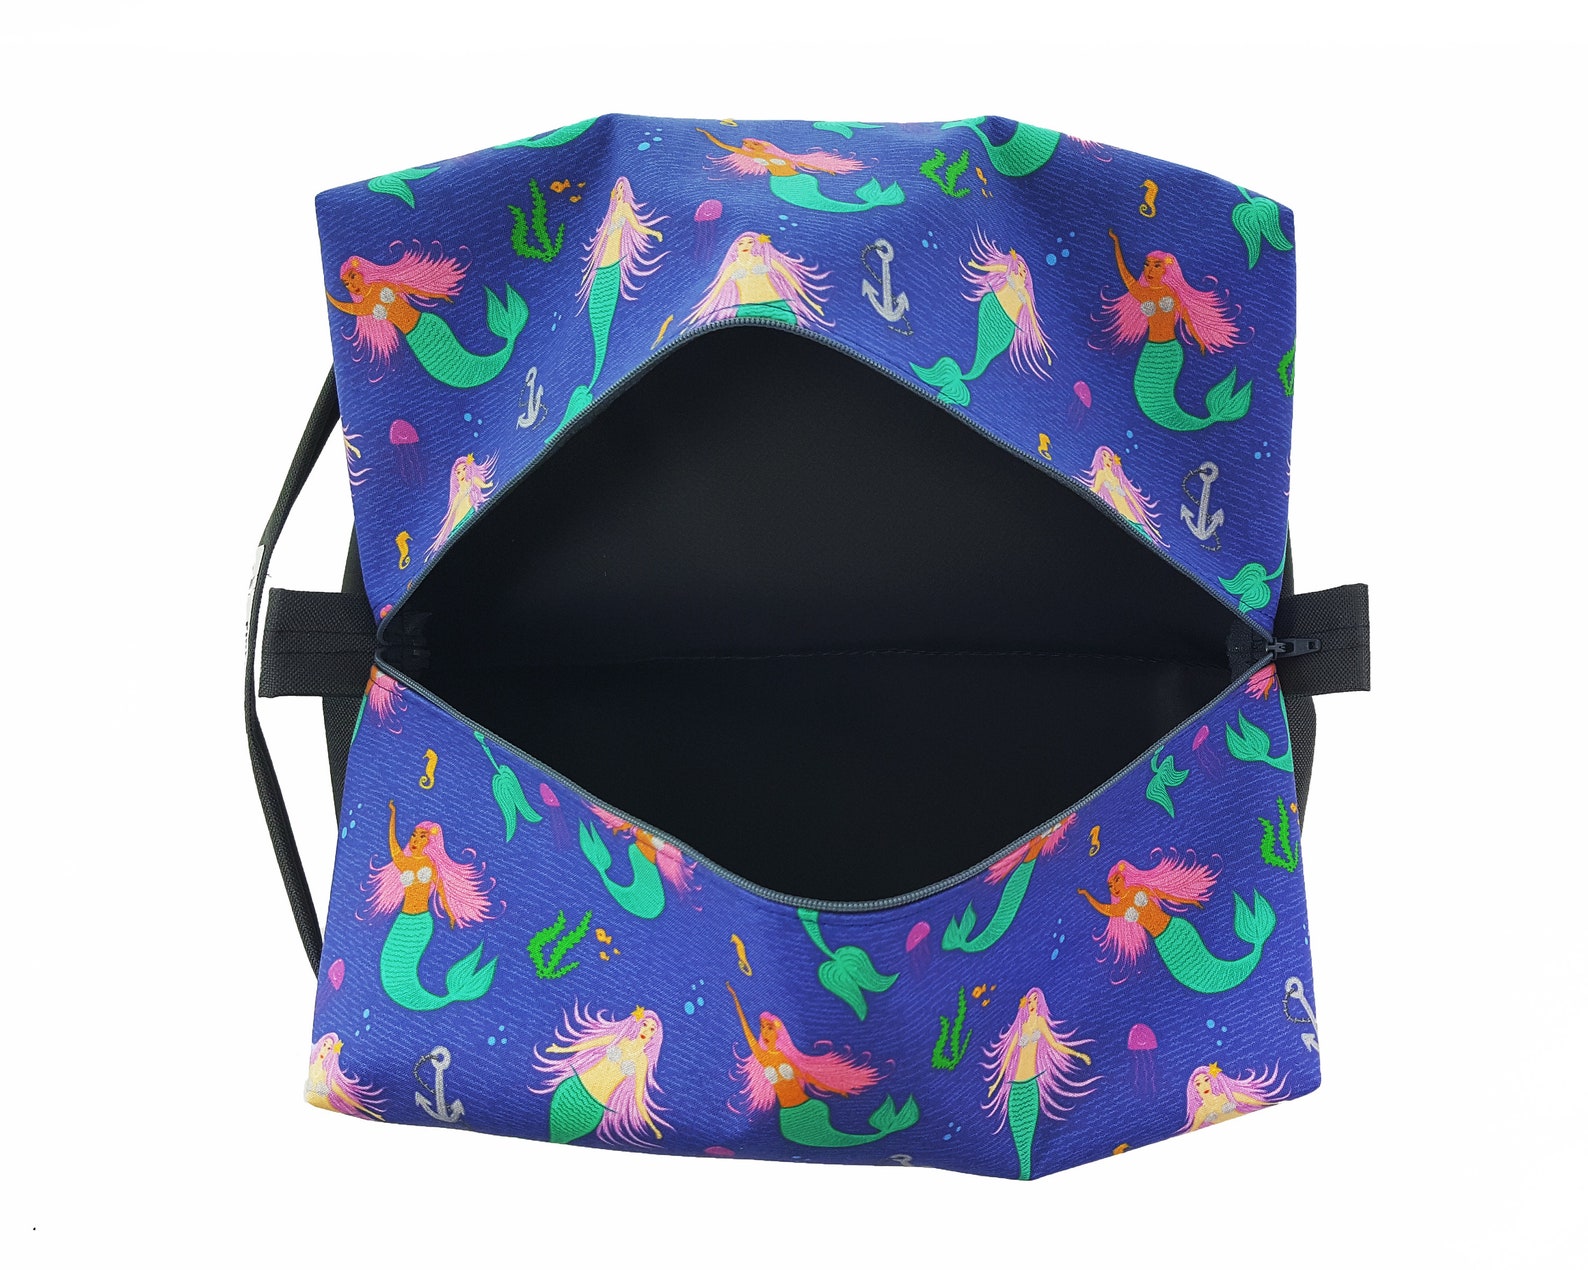 mermaid travel toiletry bag